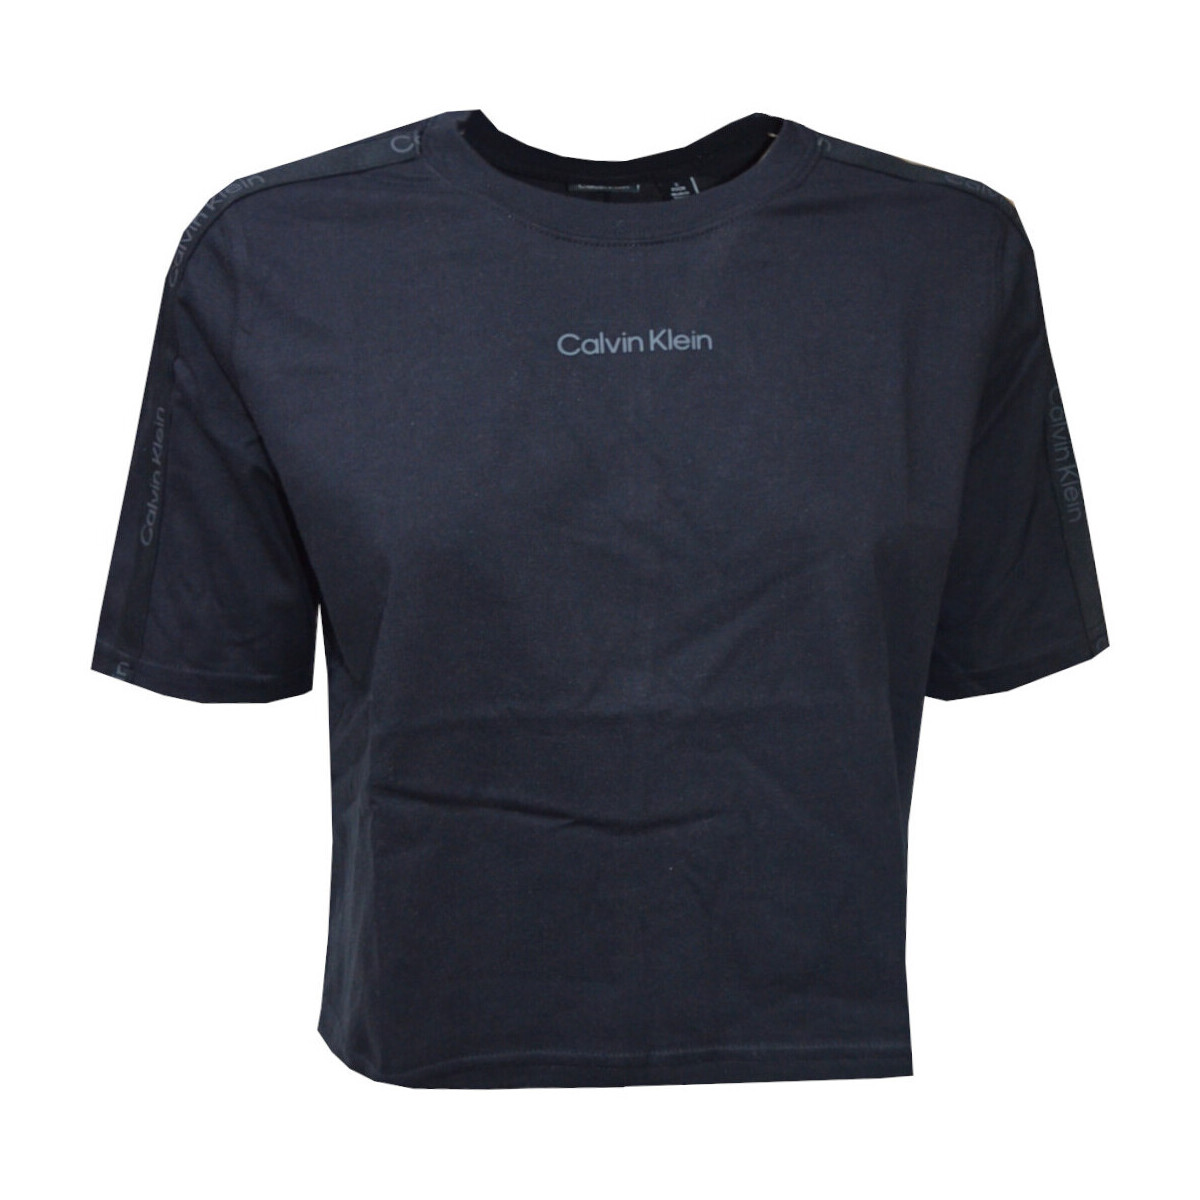 Textil Mulher T-Shirt mangas curtas Calvin Klein Jeans 00GWS4K234 Preto